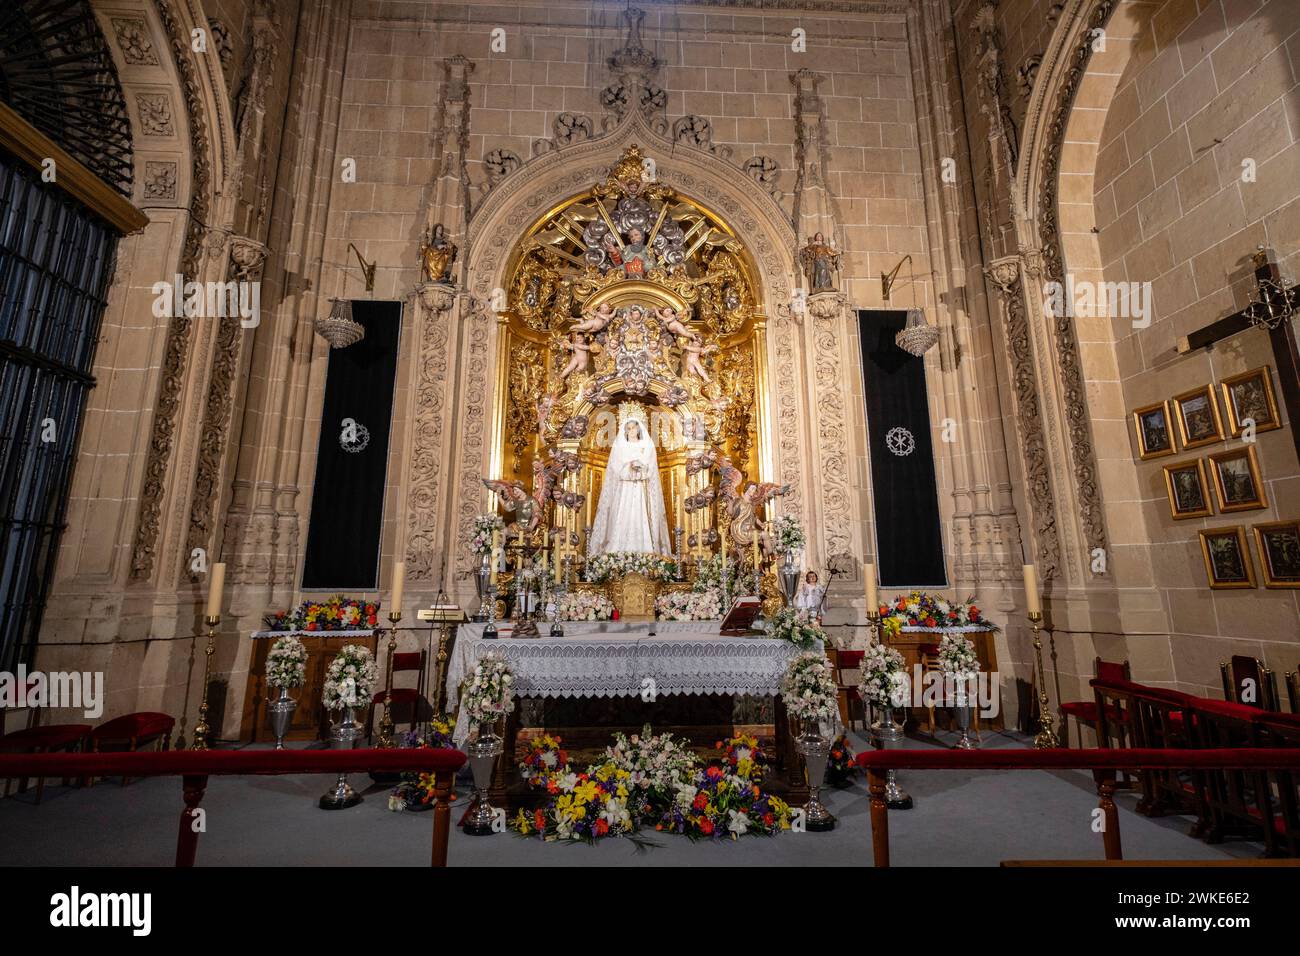 capilla del Santo Cristo de las batallas, Catedral de la Asunción de la Virgen, Salamanca, comunidad Autónoma de Castilla y León, España. Foto de stock